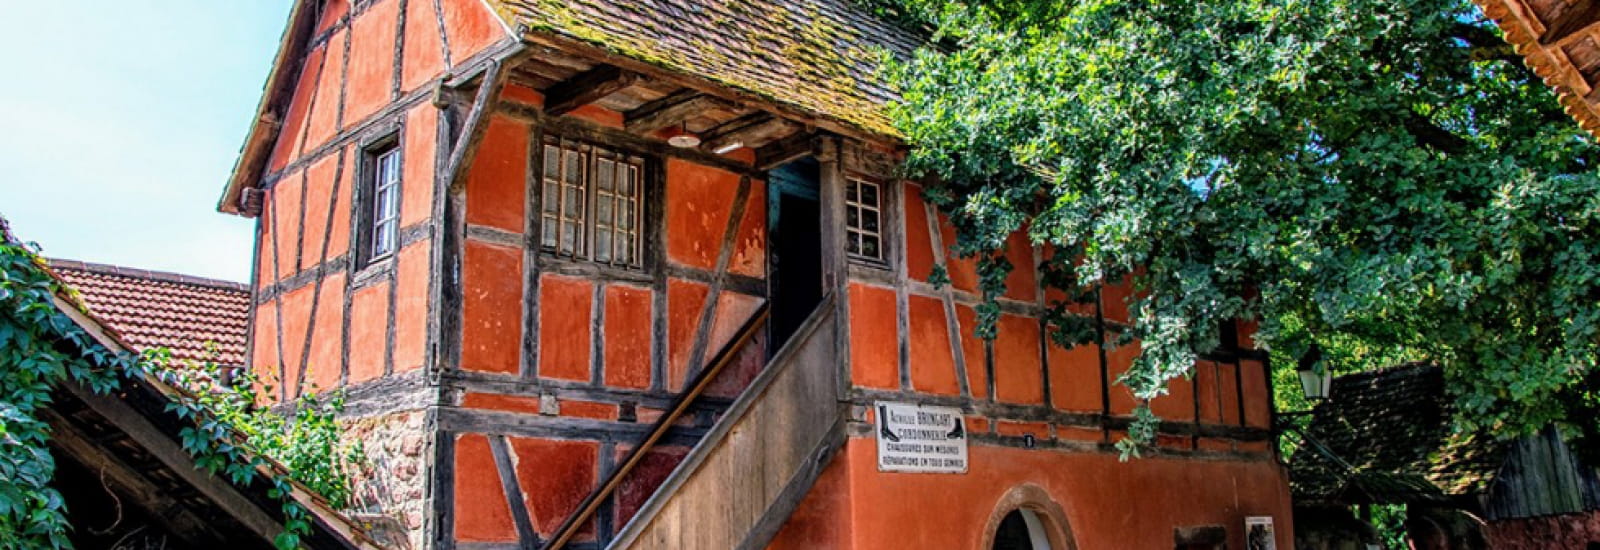 Une maison orange avec une architecture typiquement alsacienne